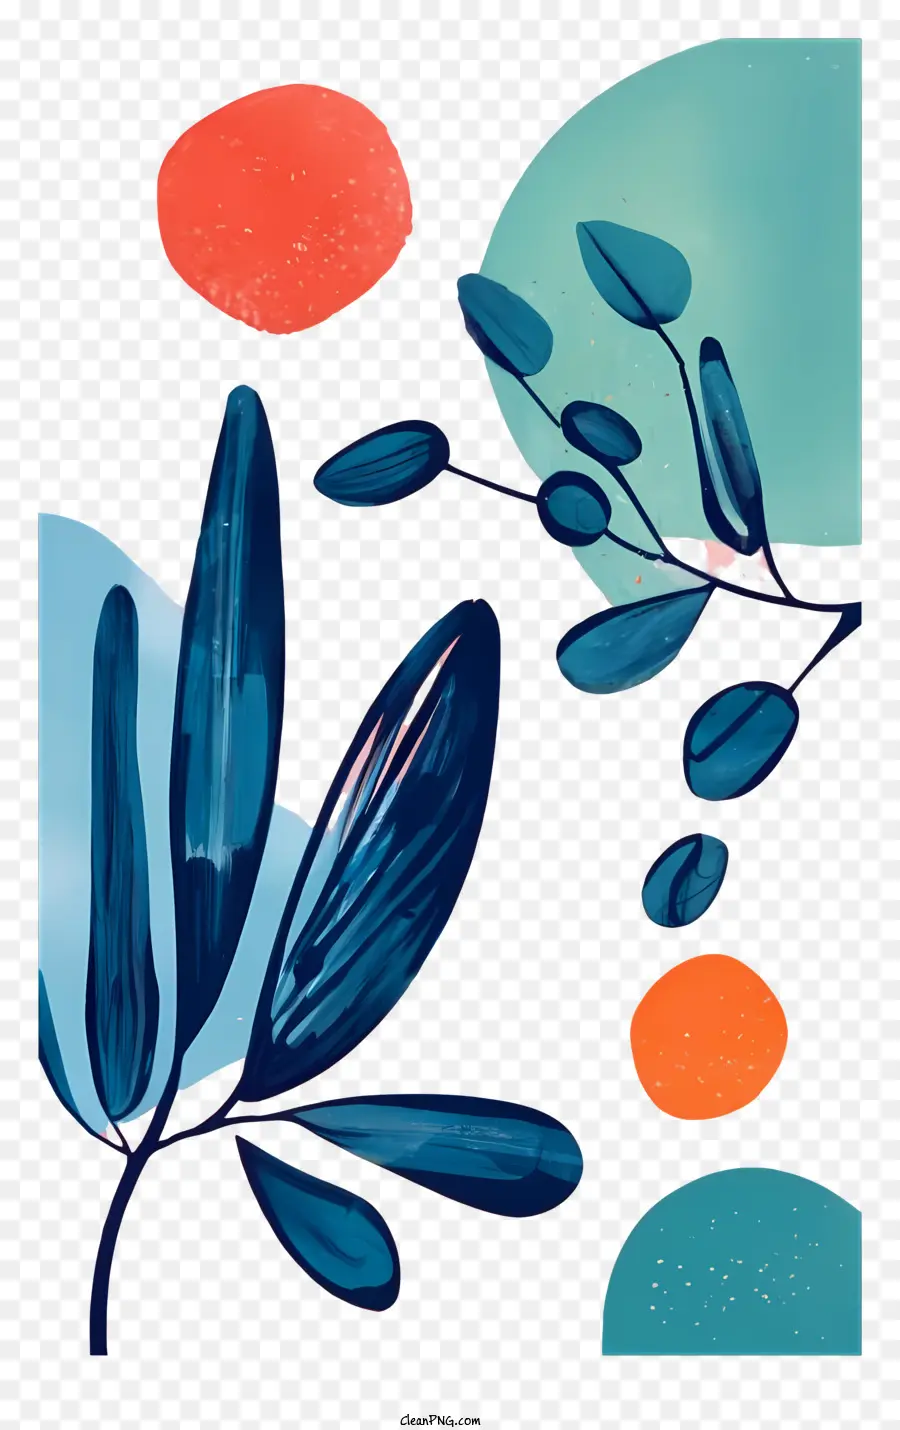 Blaue Blume - Vordergrund: Blaue und orange Blume auf schwarzem Hintergrund